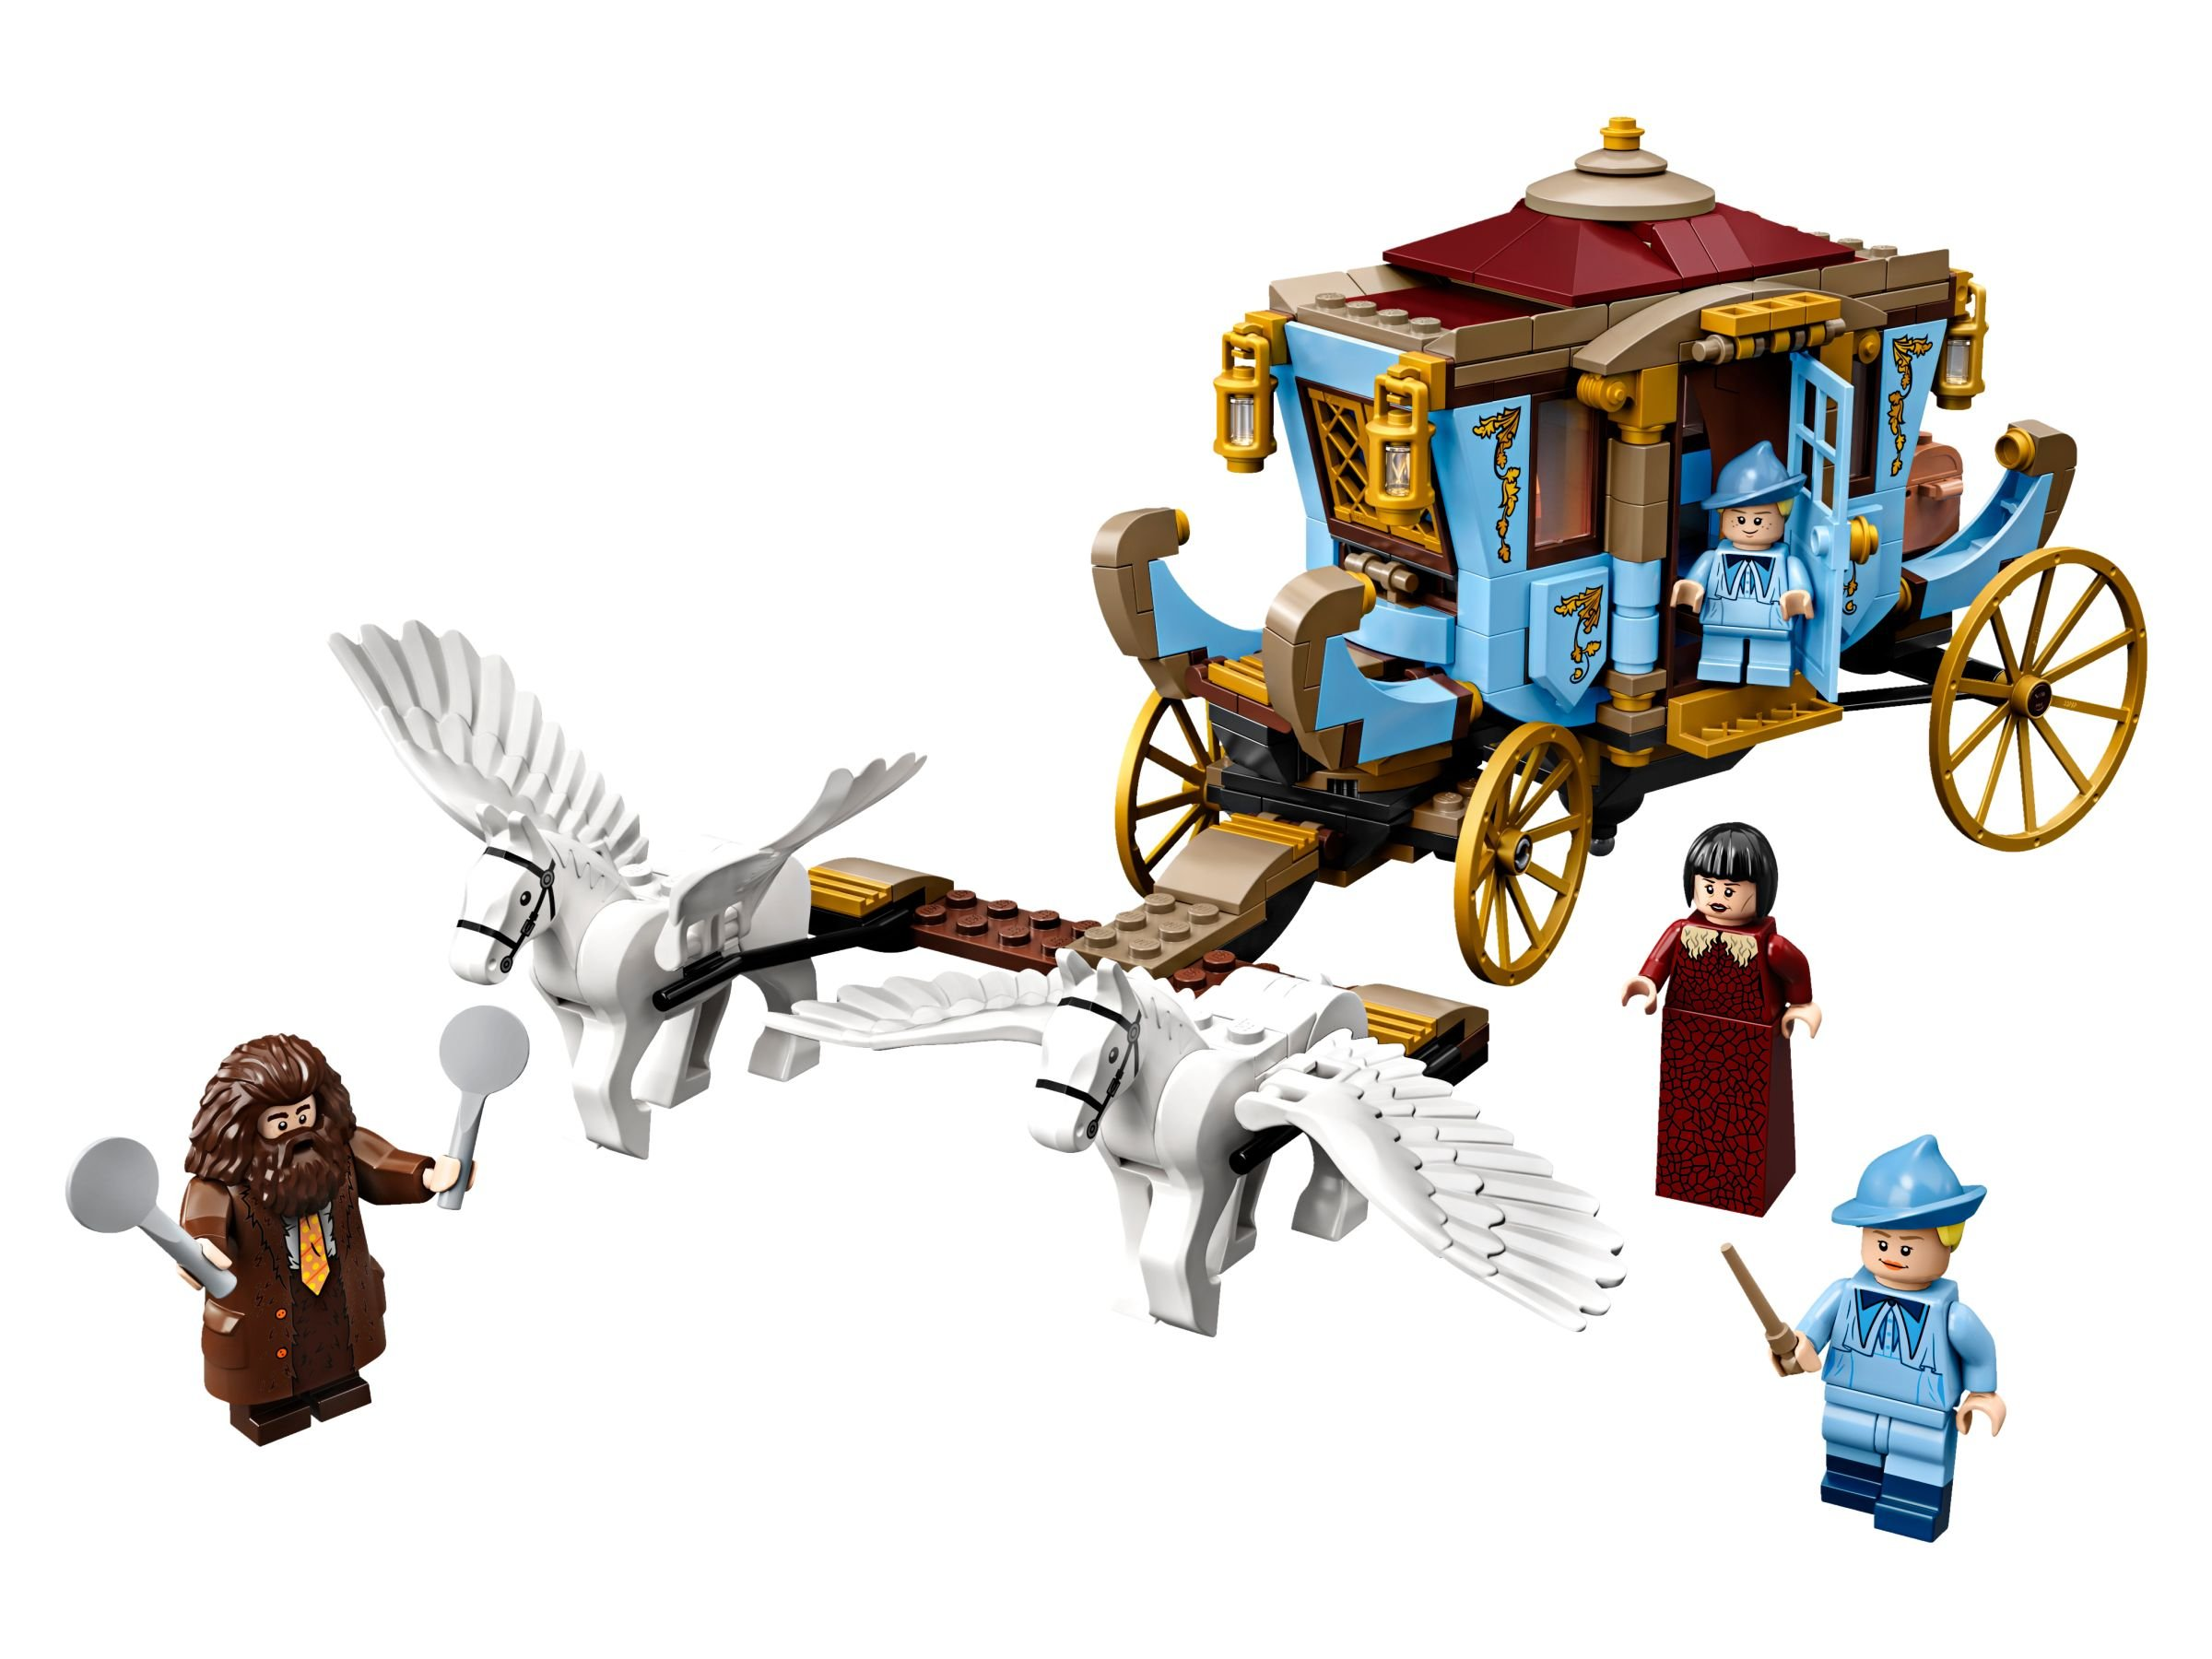 Kutsche von Bausatz Ankunft Hogwarts LEGO Beauxbatons in 75958